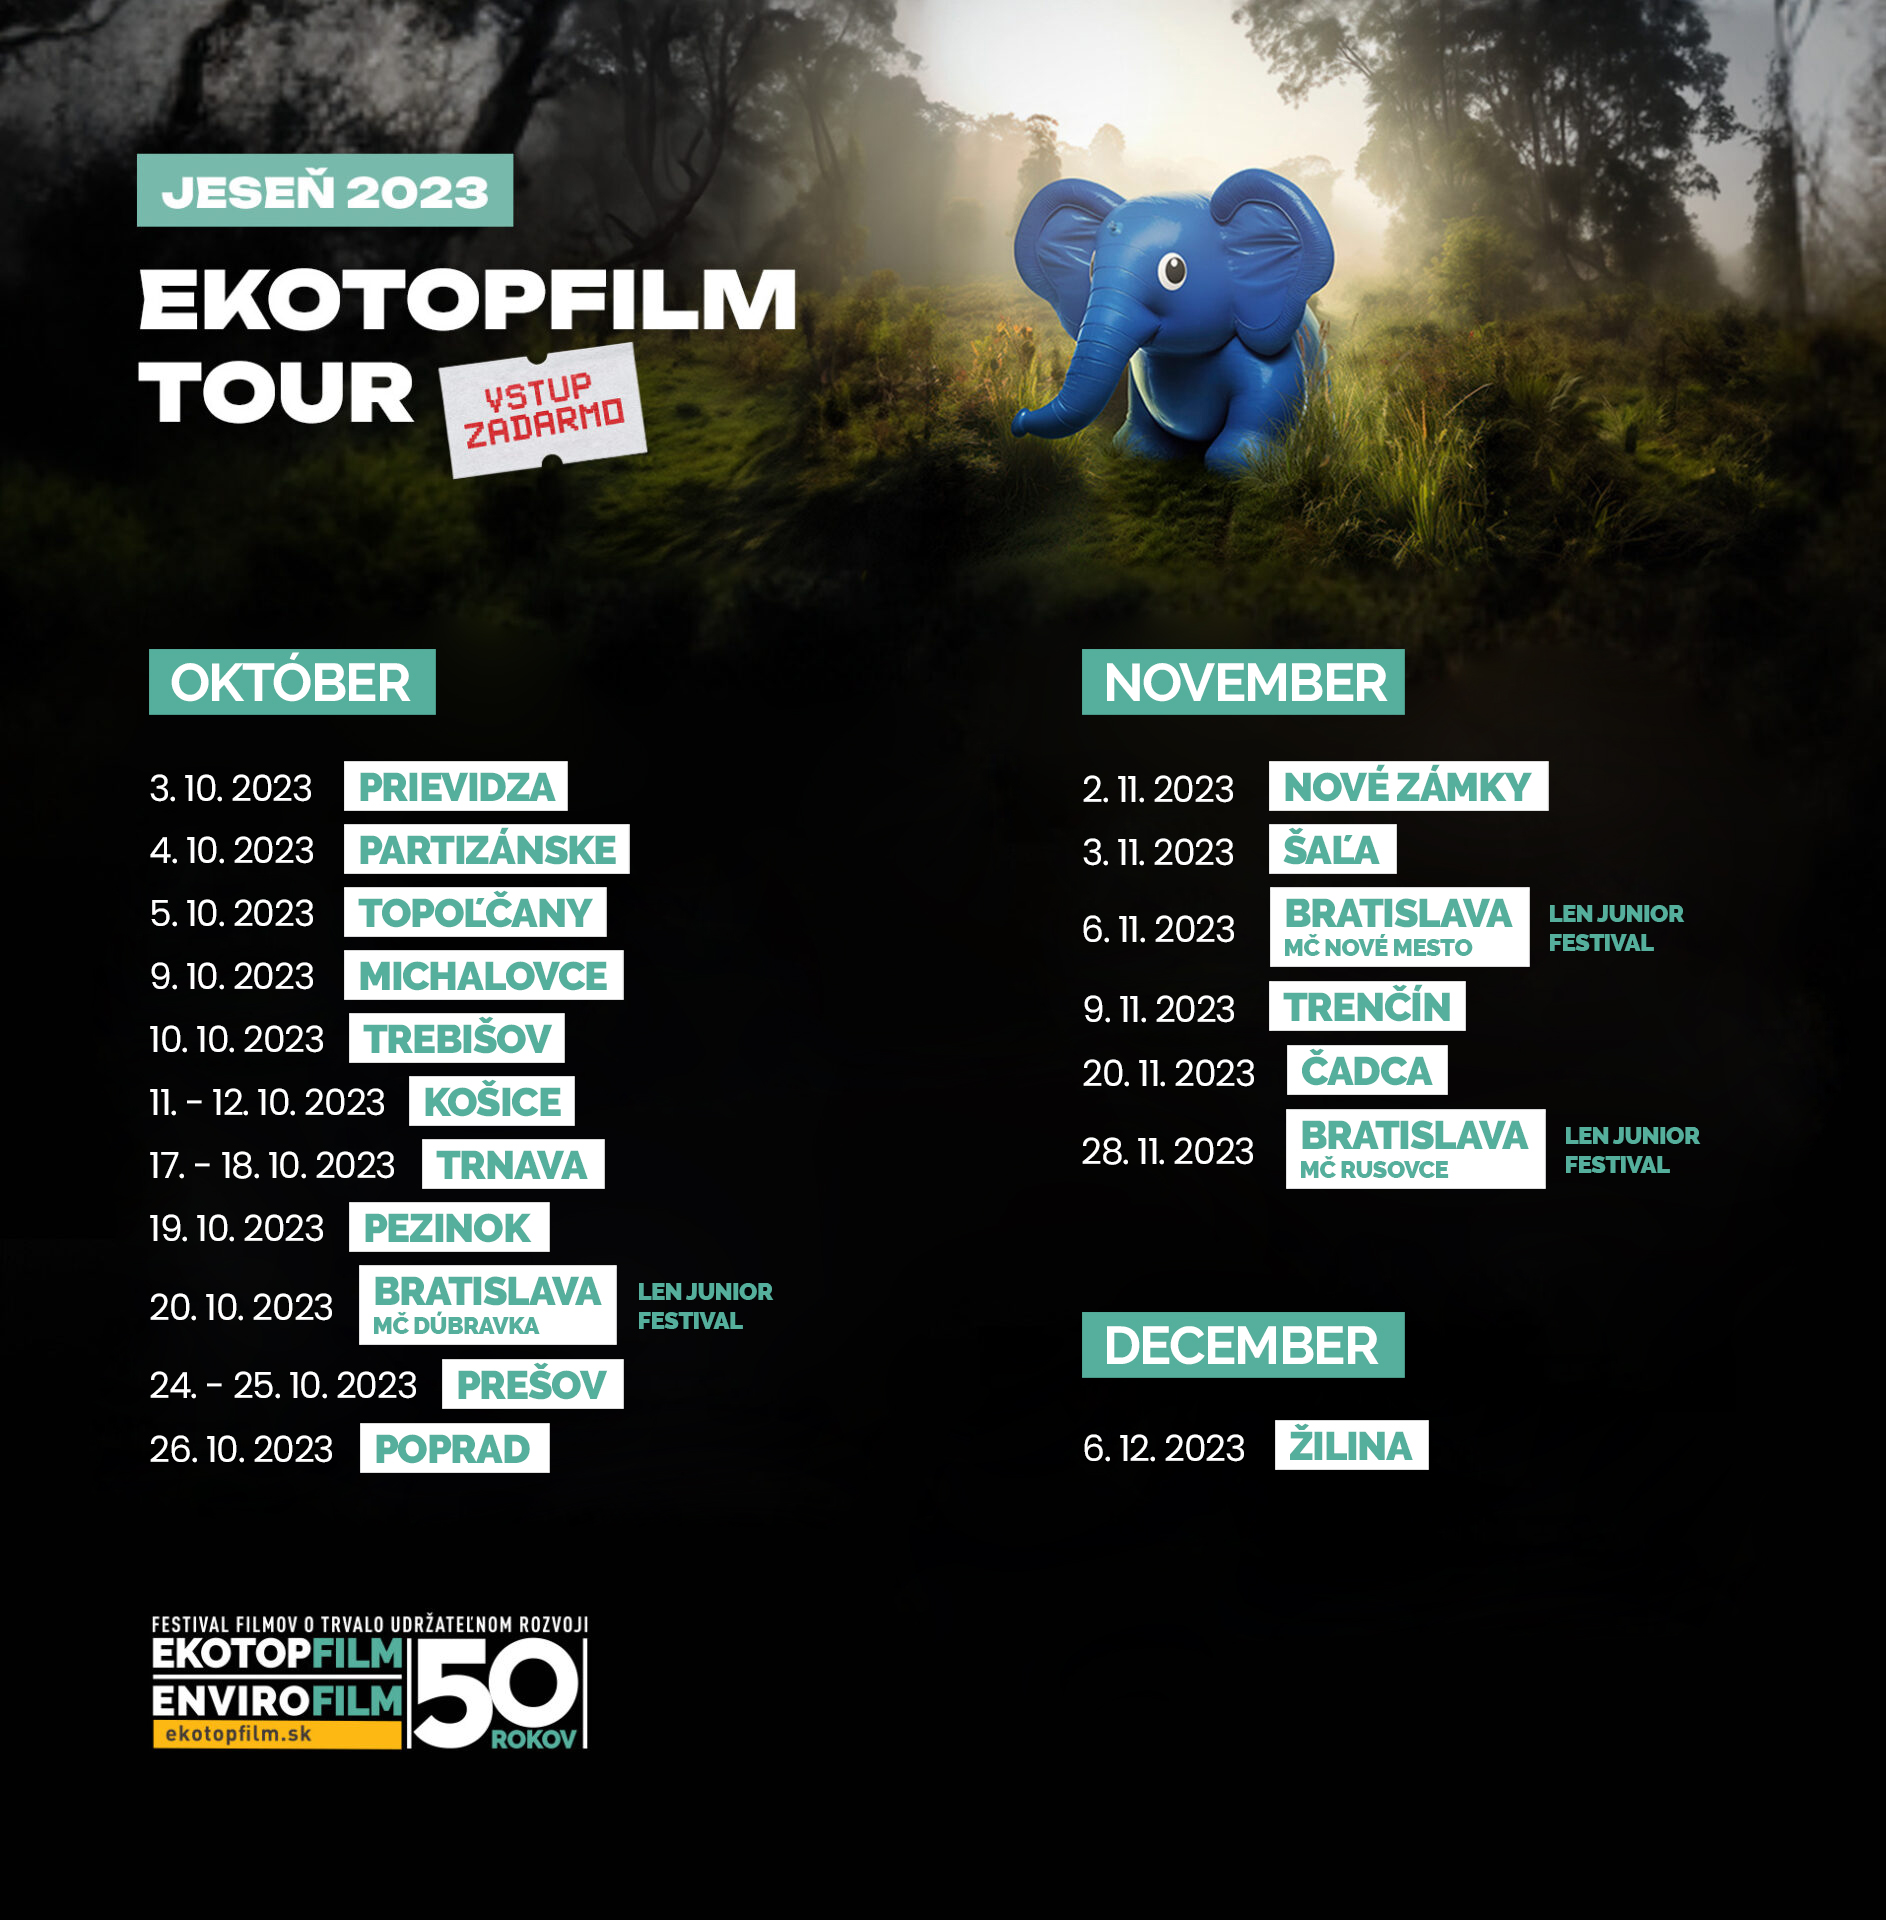 EKOTOPFILM TOUR 2023